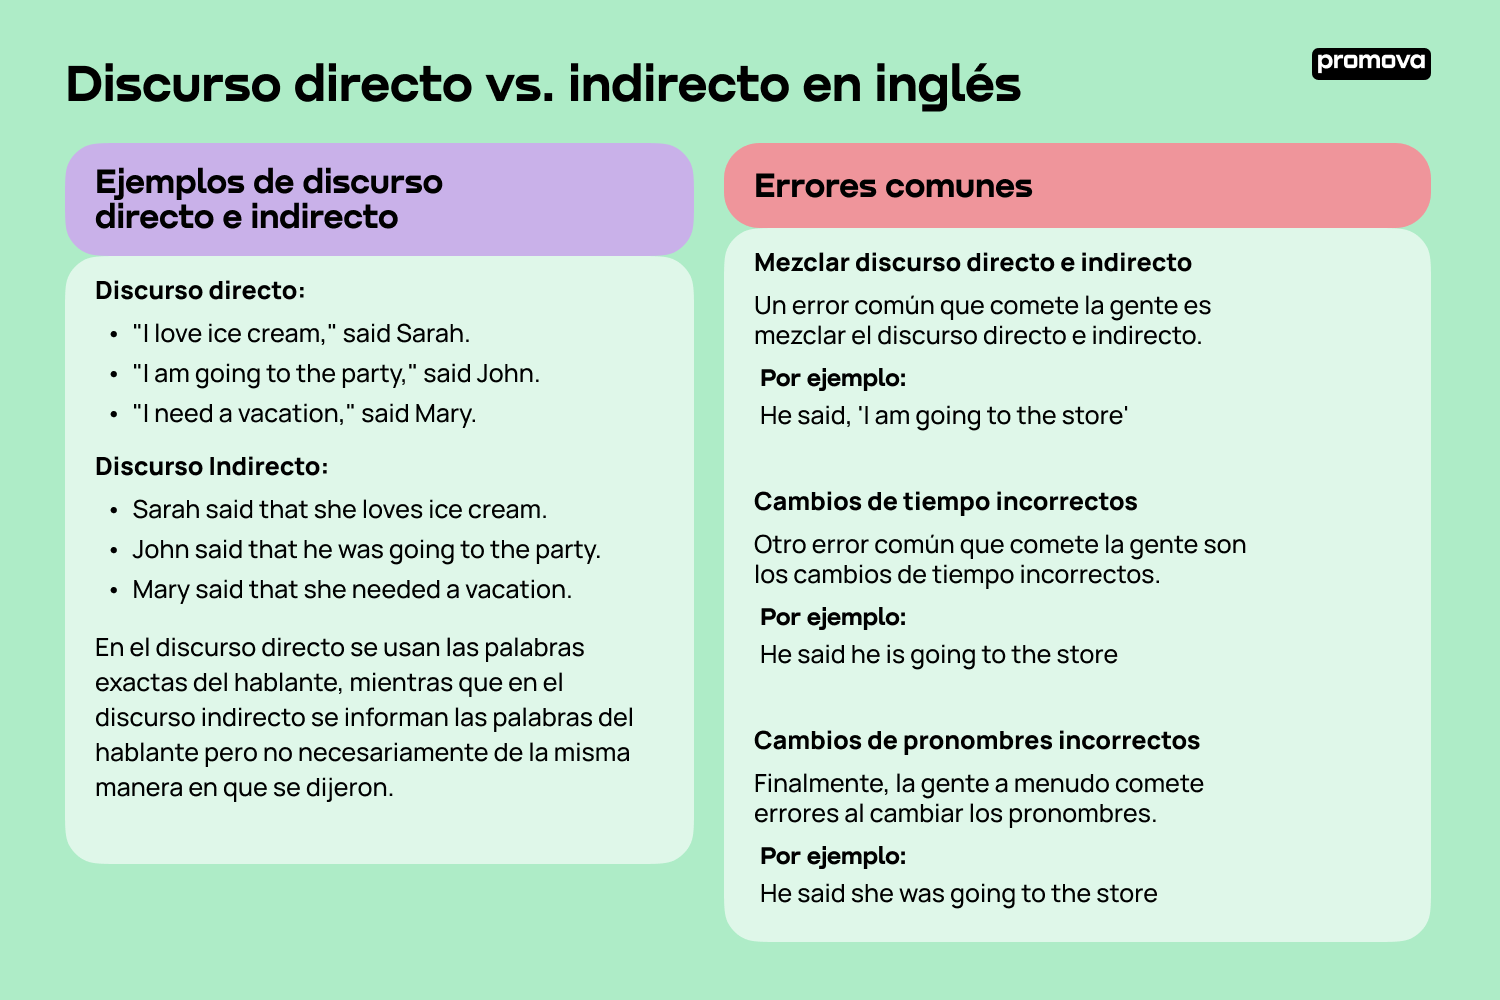 Conoce las variantes del discurso en inglés: Directo vs indirecto